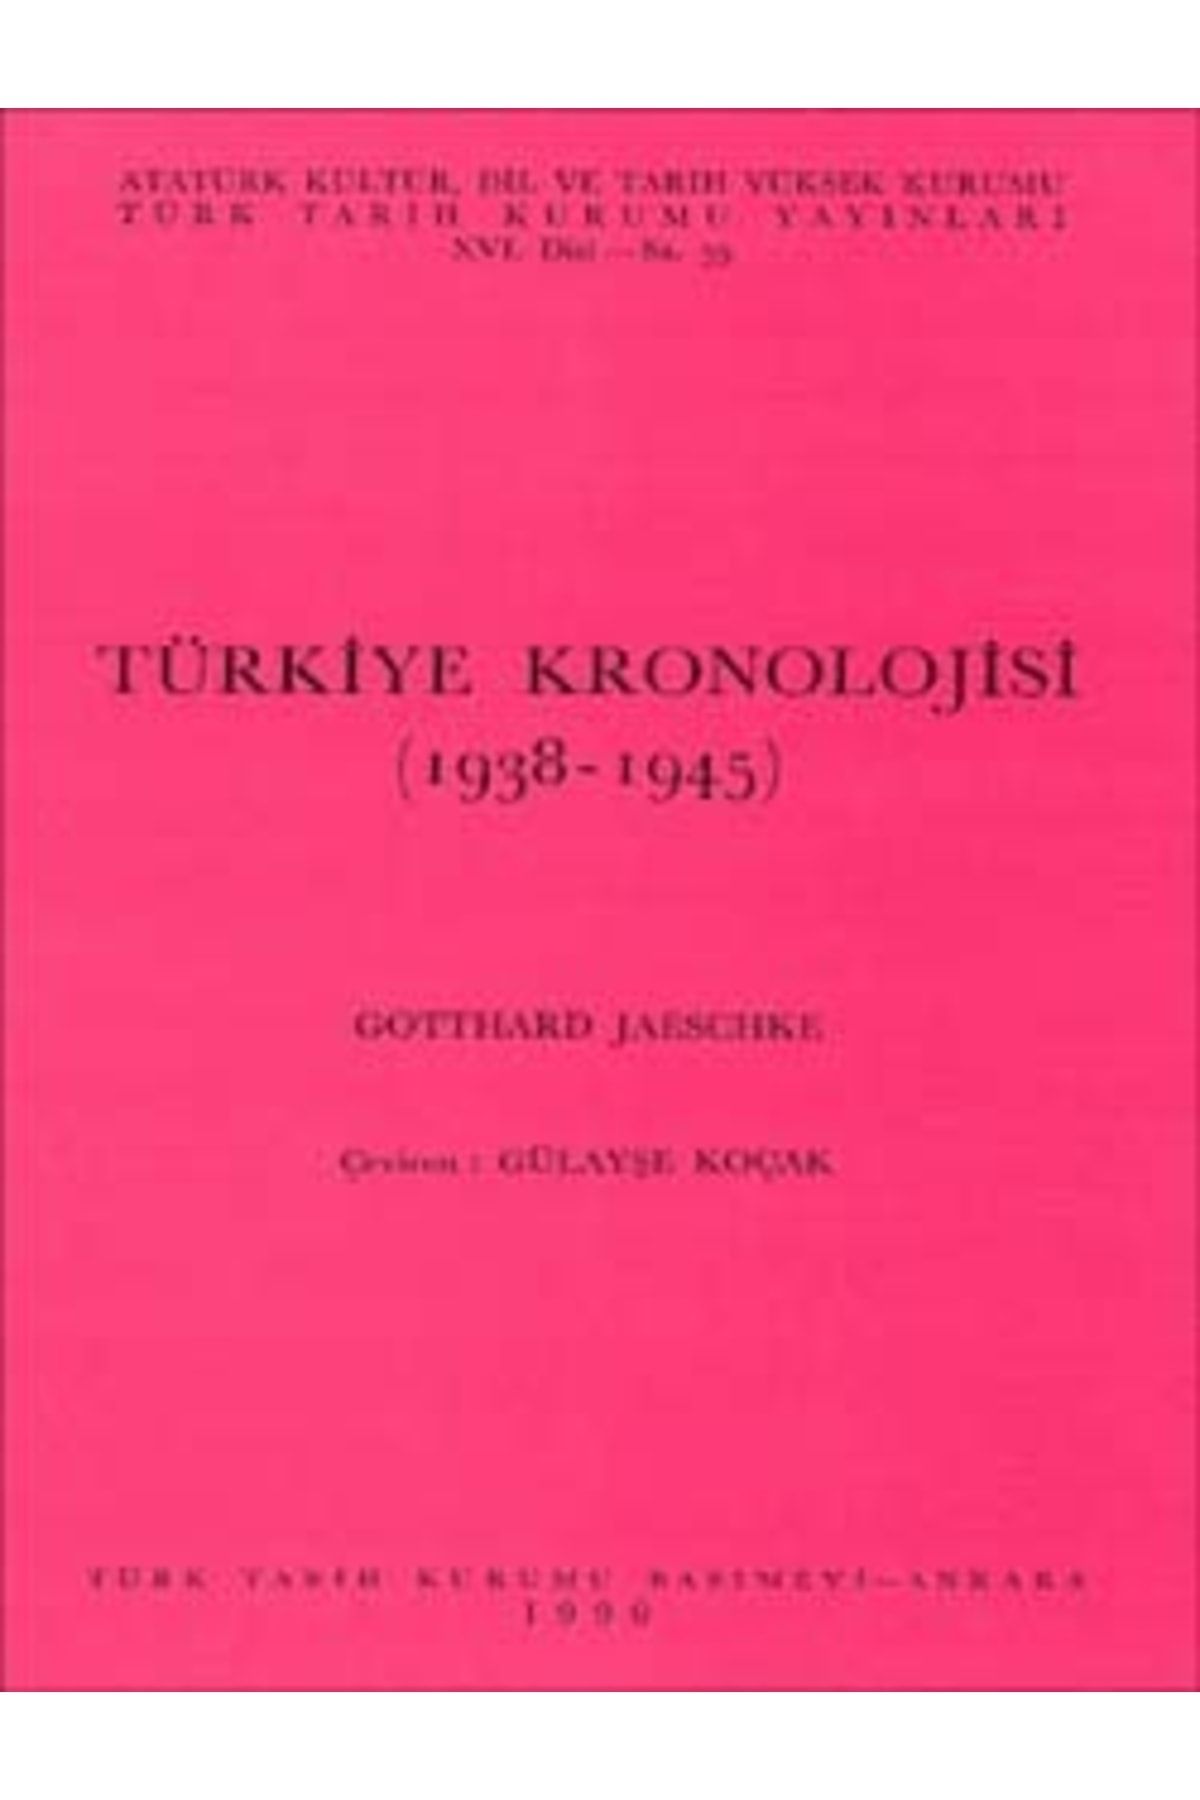 Türk Tarih Kurumu Yayınları Türkiye Kronolojisi (1938-1945), 1990